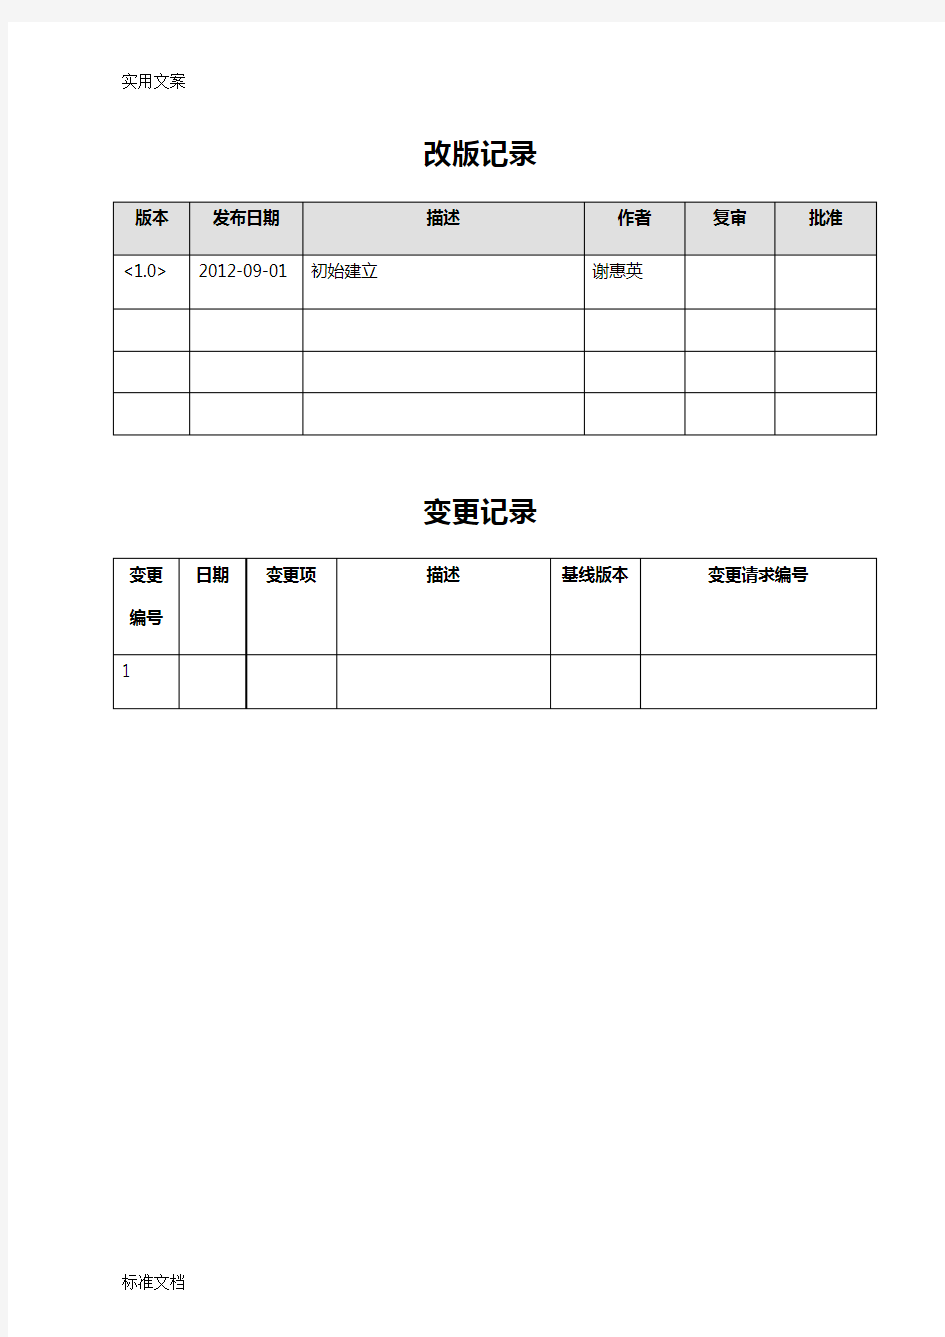 广东省国家税务局网上办税大厅用户操作手册簿